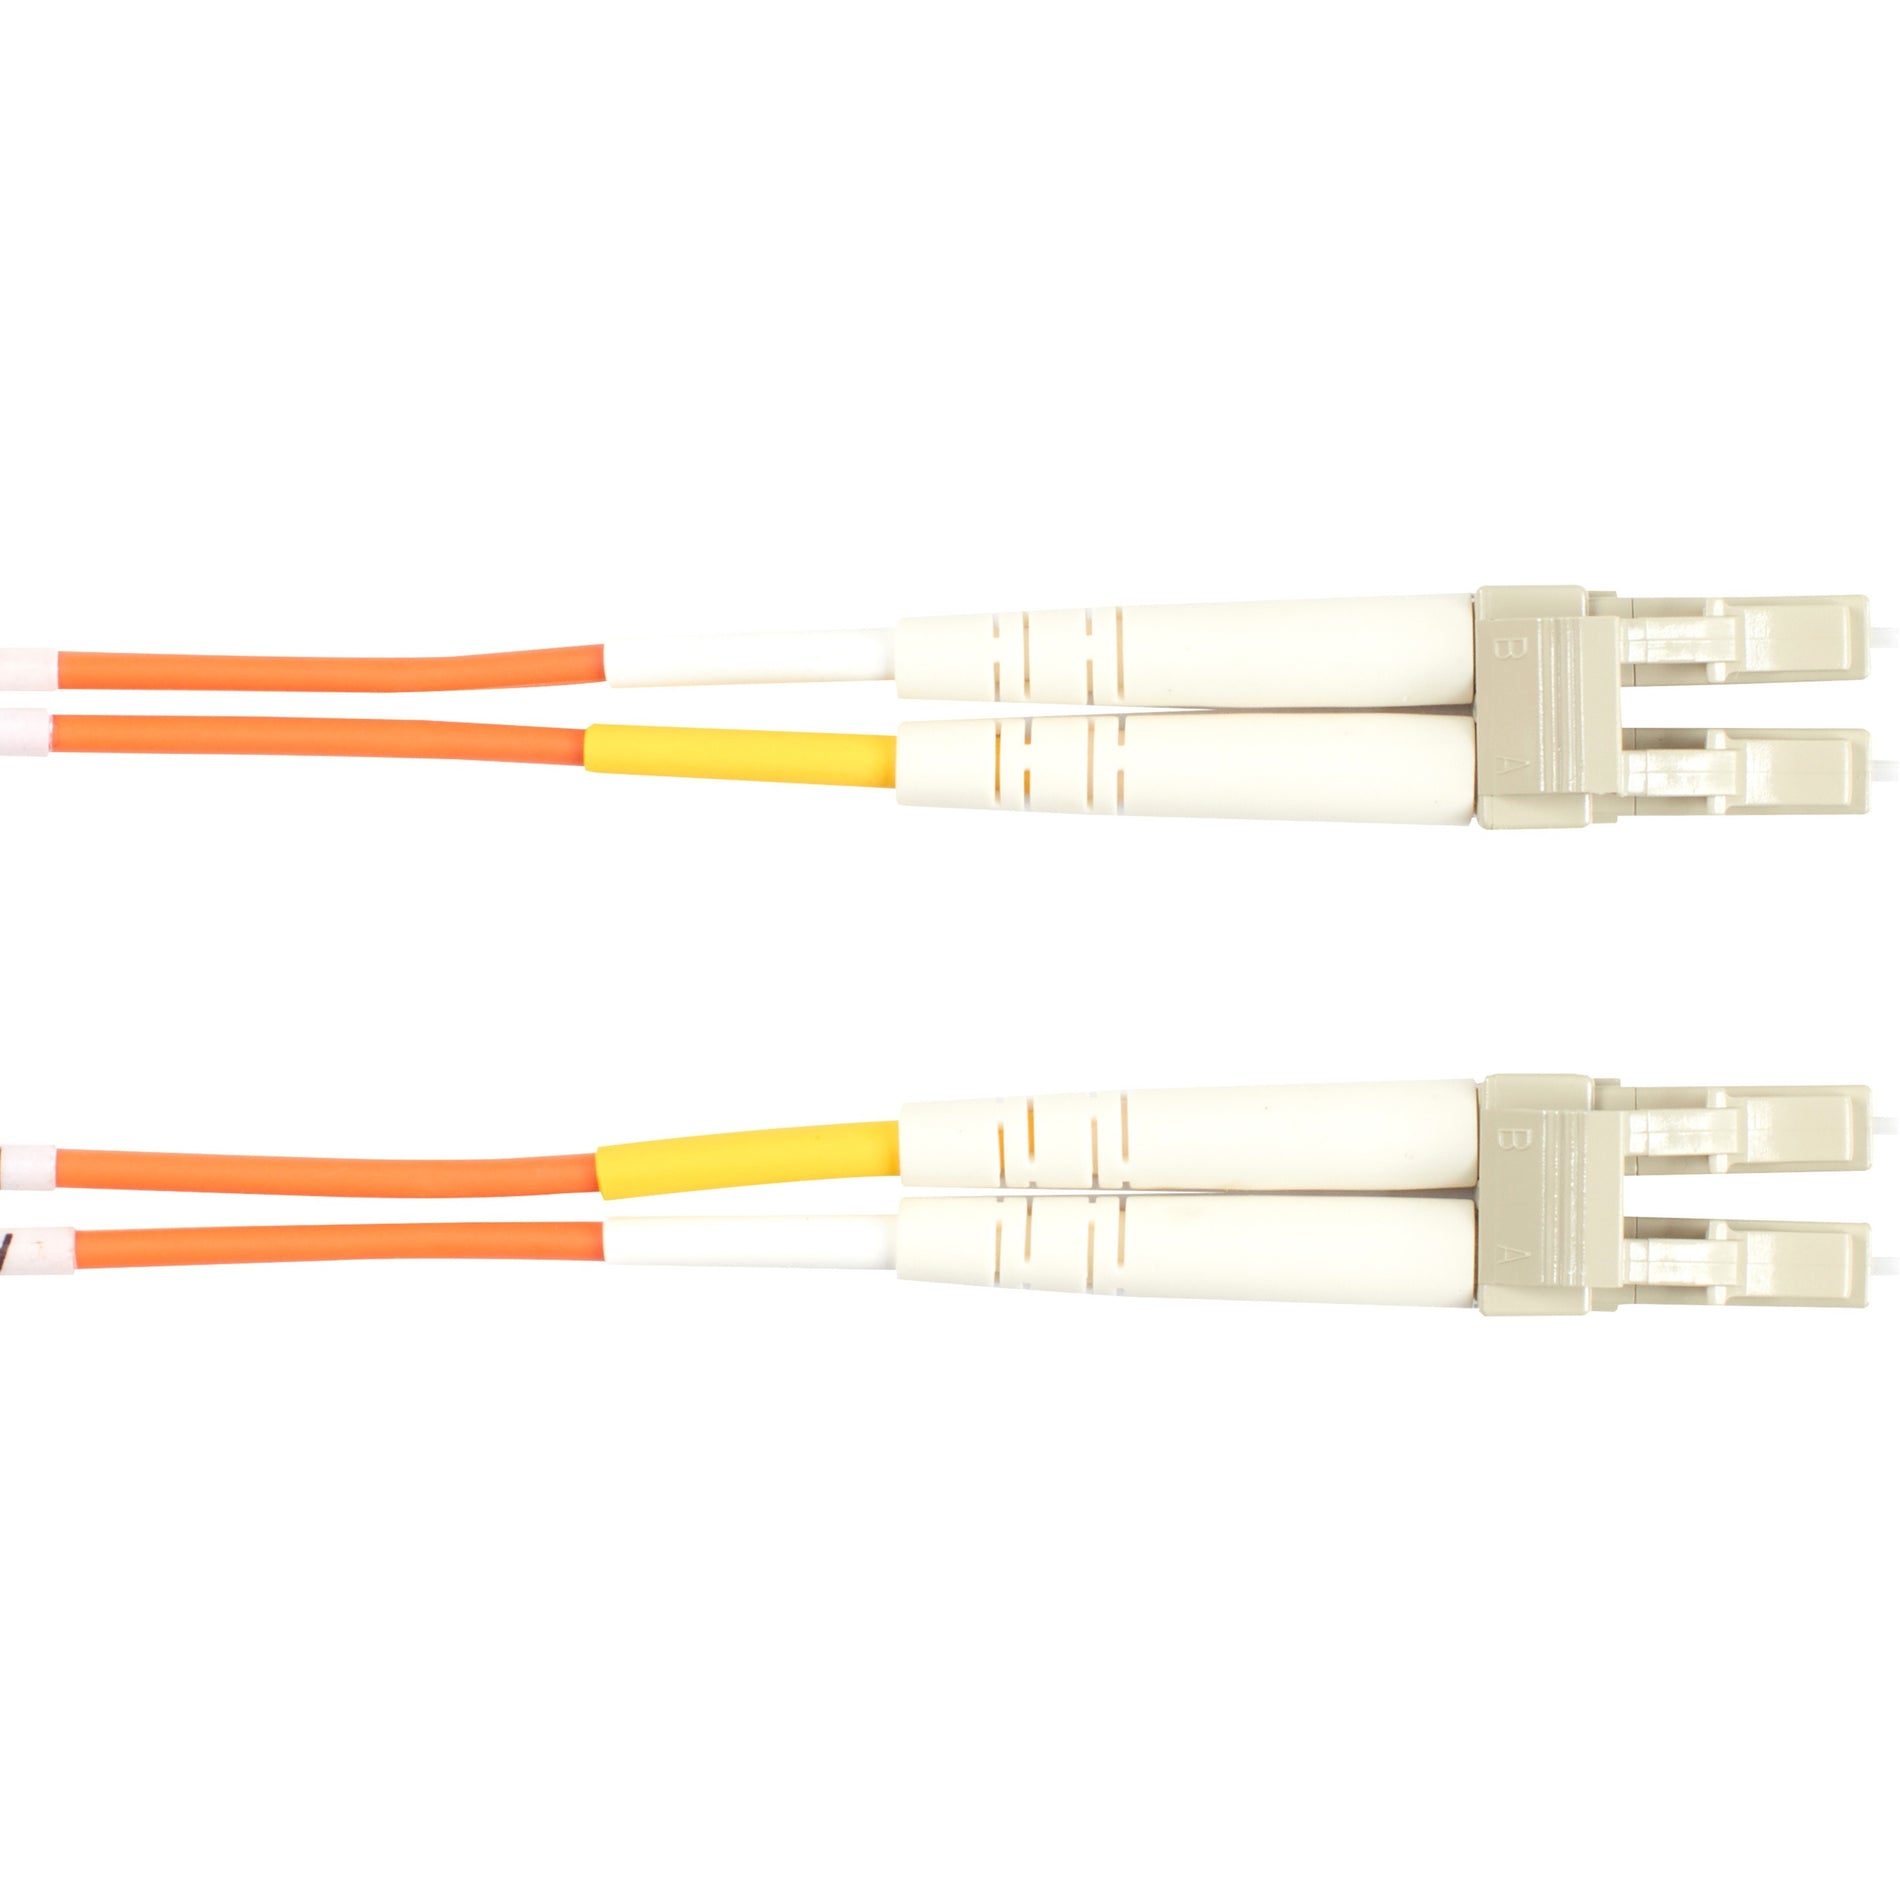 Black Box EFN110-030M-LCLC Fiber Optic Duplex Patch Network Cable, Multi-mode, 98.40 ft, Orange Jacket